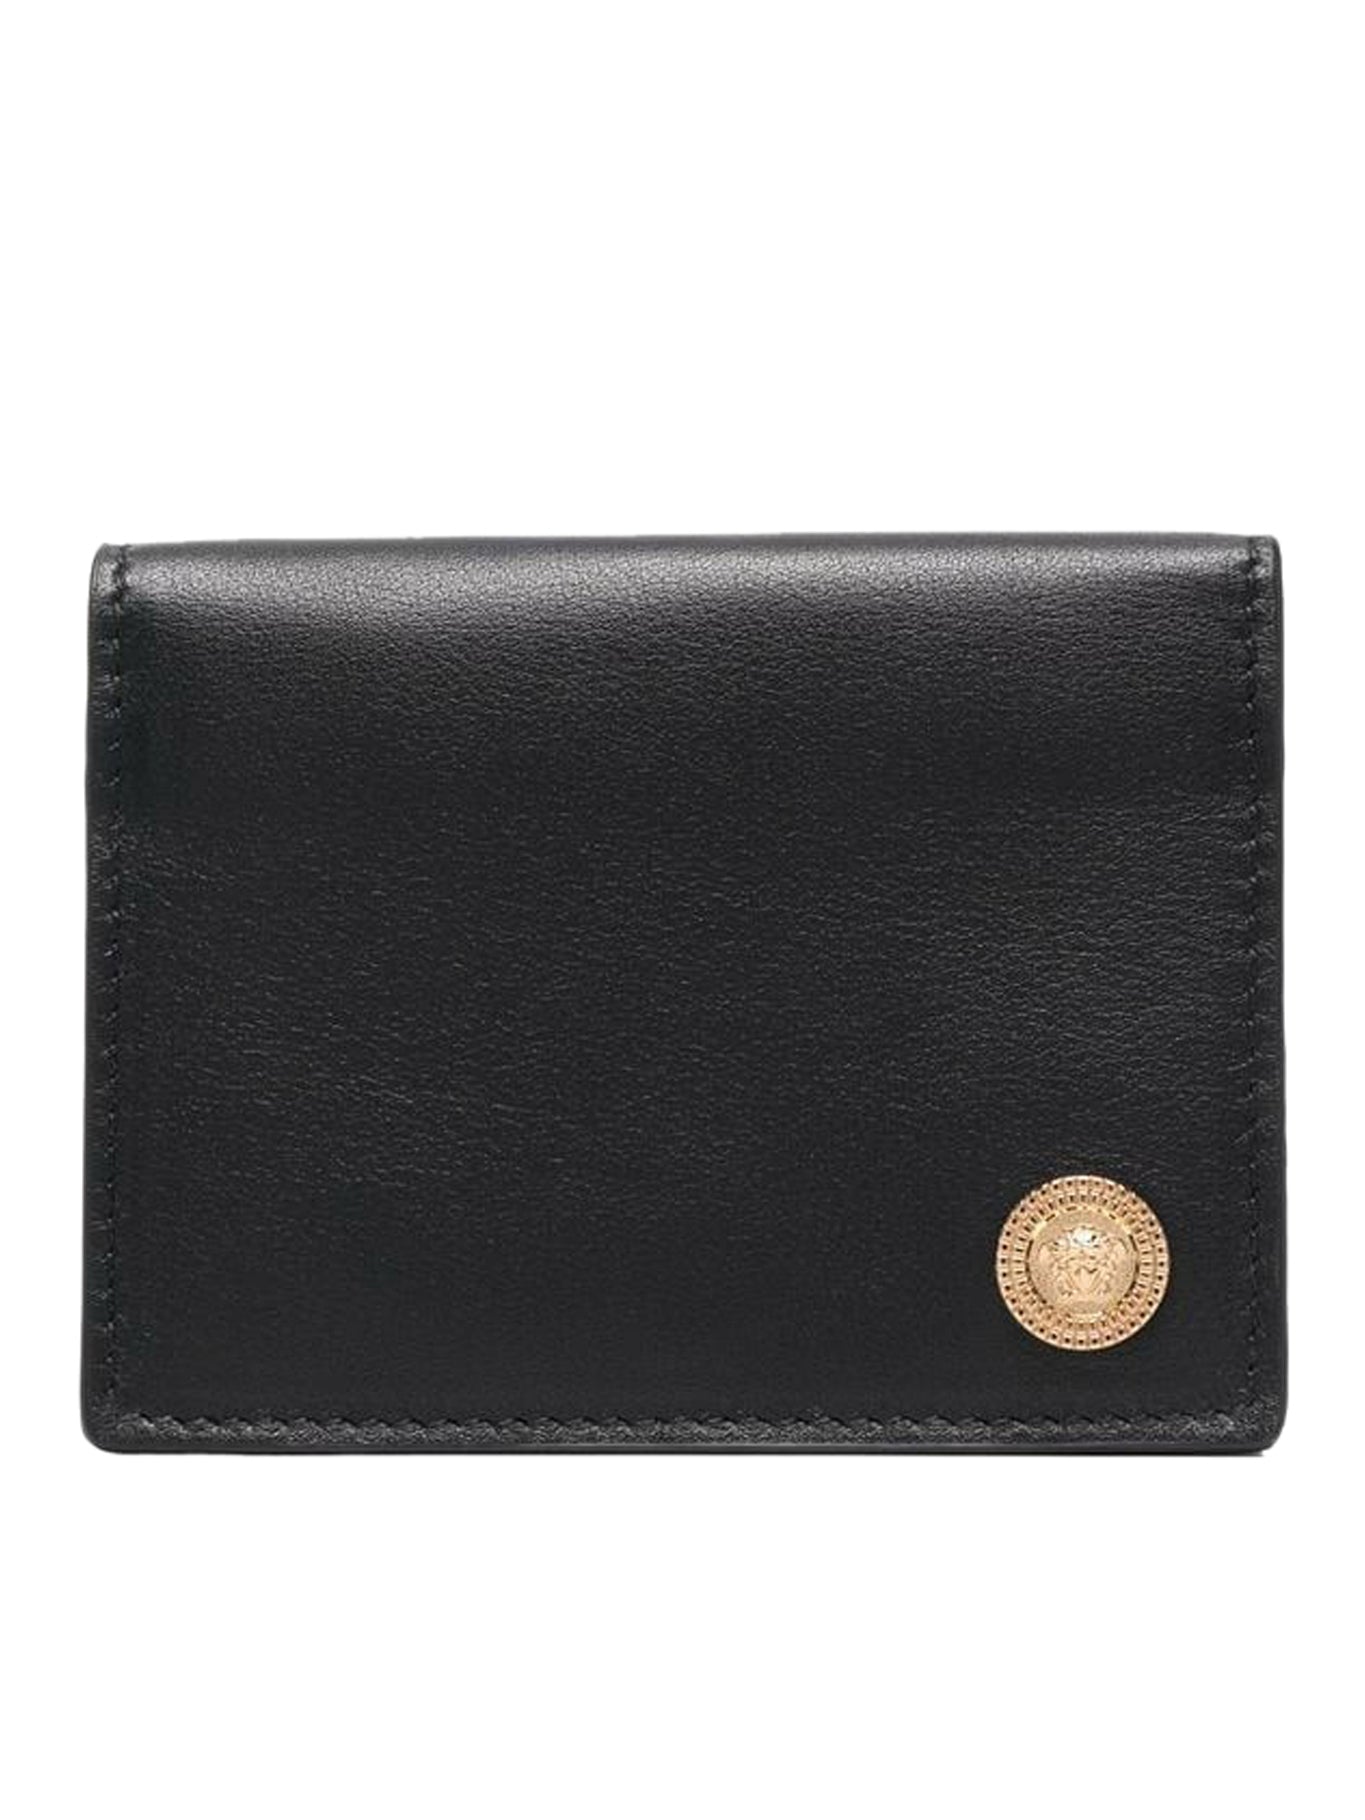 Medusa leather wallet